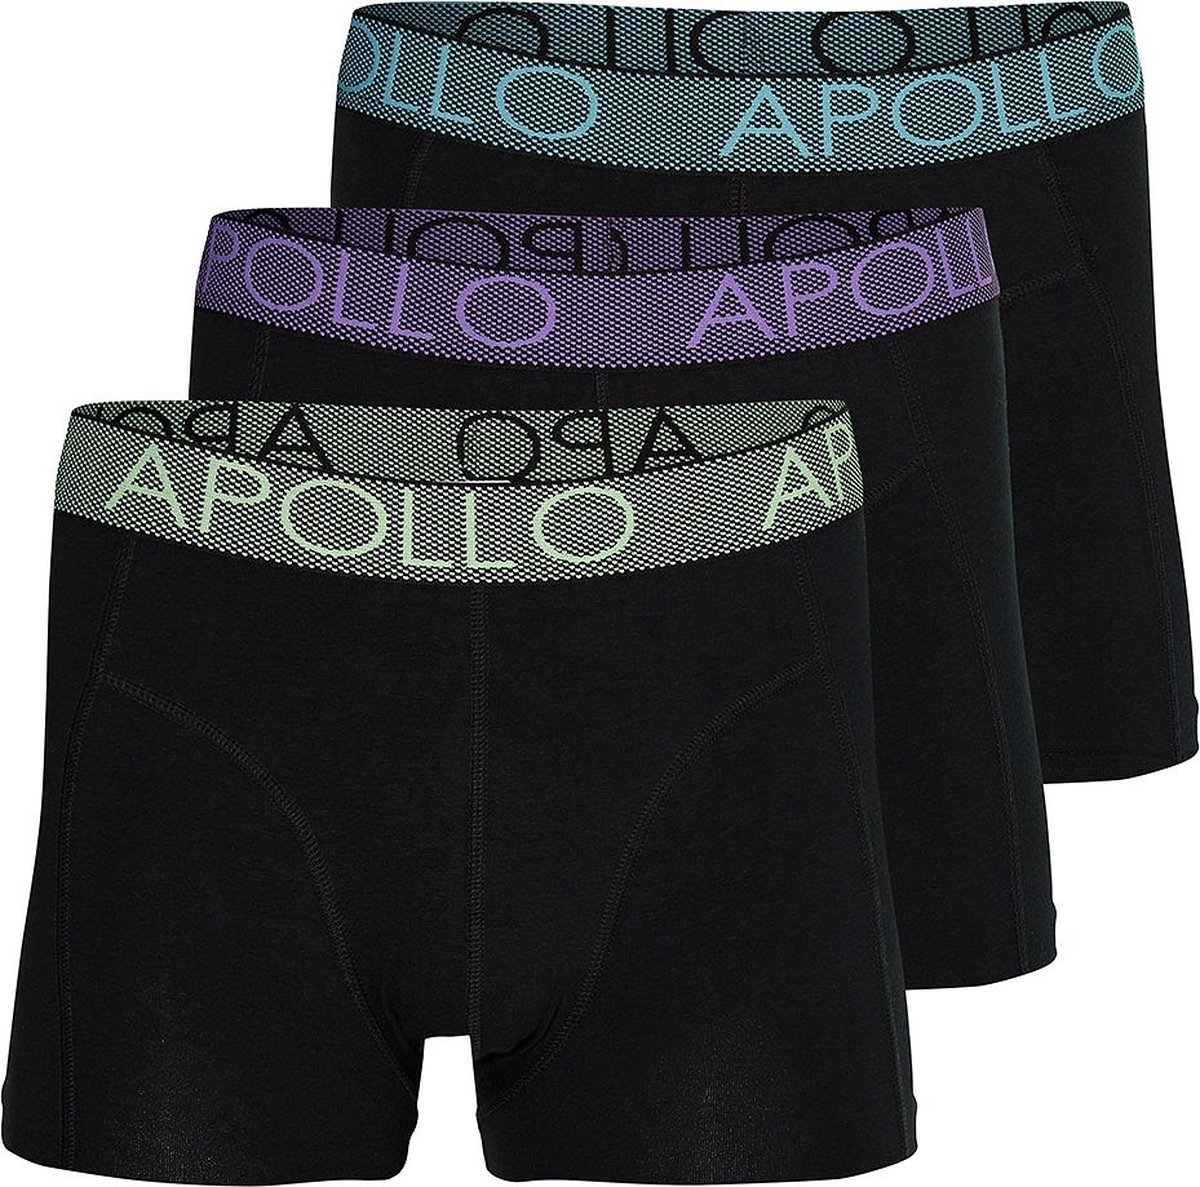 Apollo - Boxershort heren - Zwart - Maat XL - Heren boxershort - Boxershort multipack - Heren boxershort pack - Ondergoed Heren - Boxershort jongens